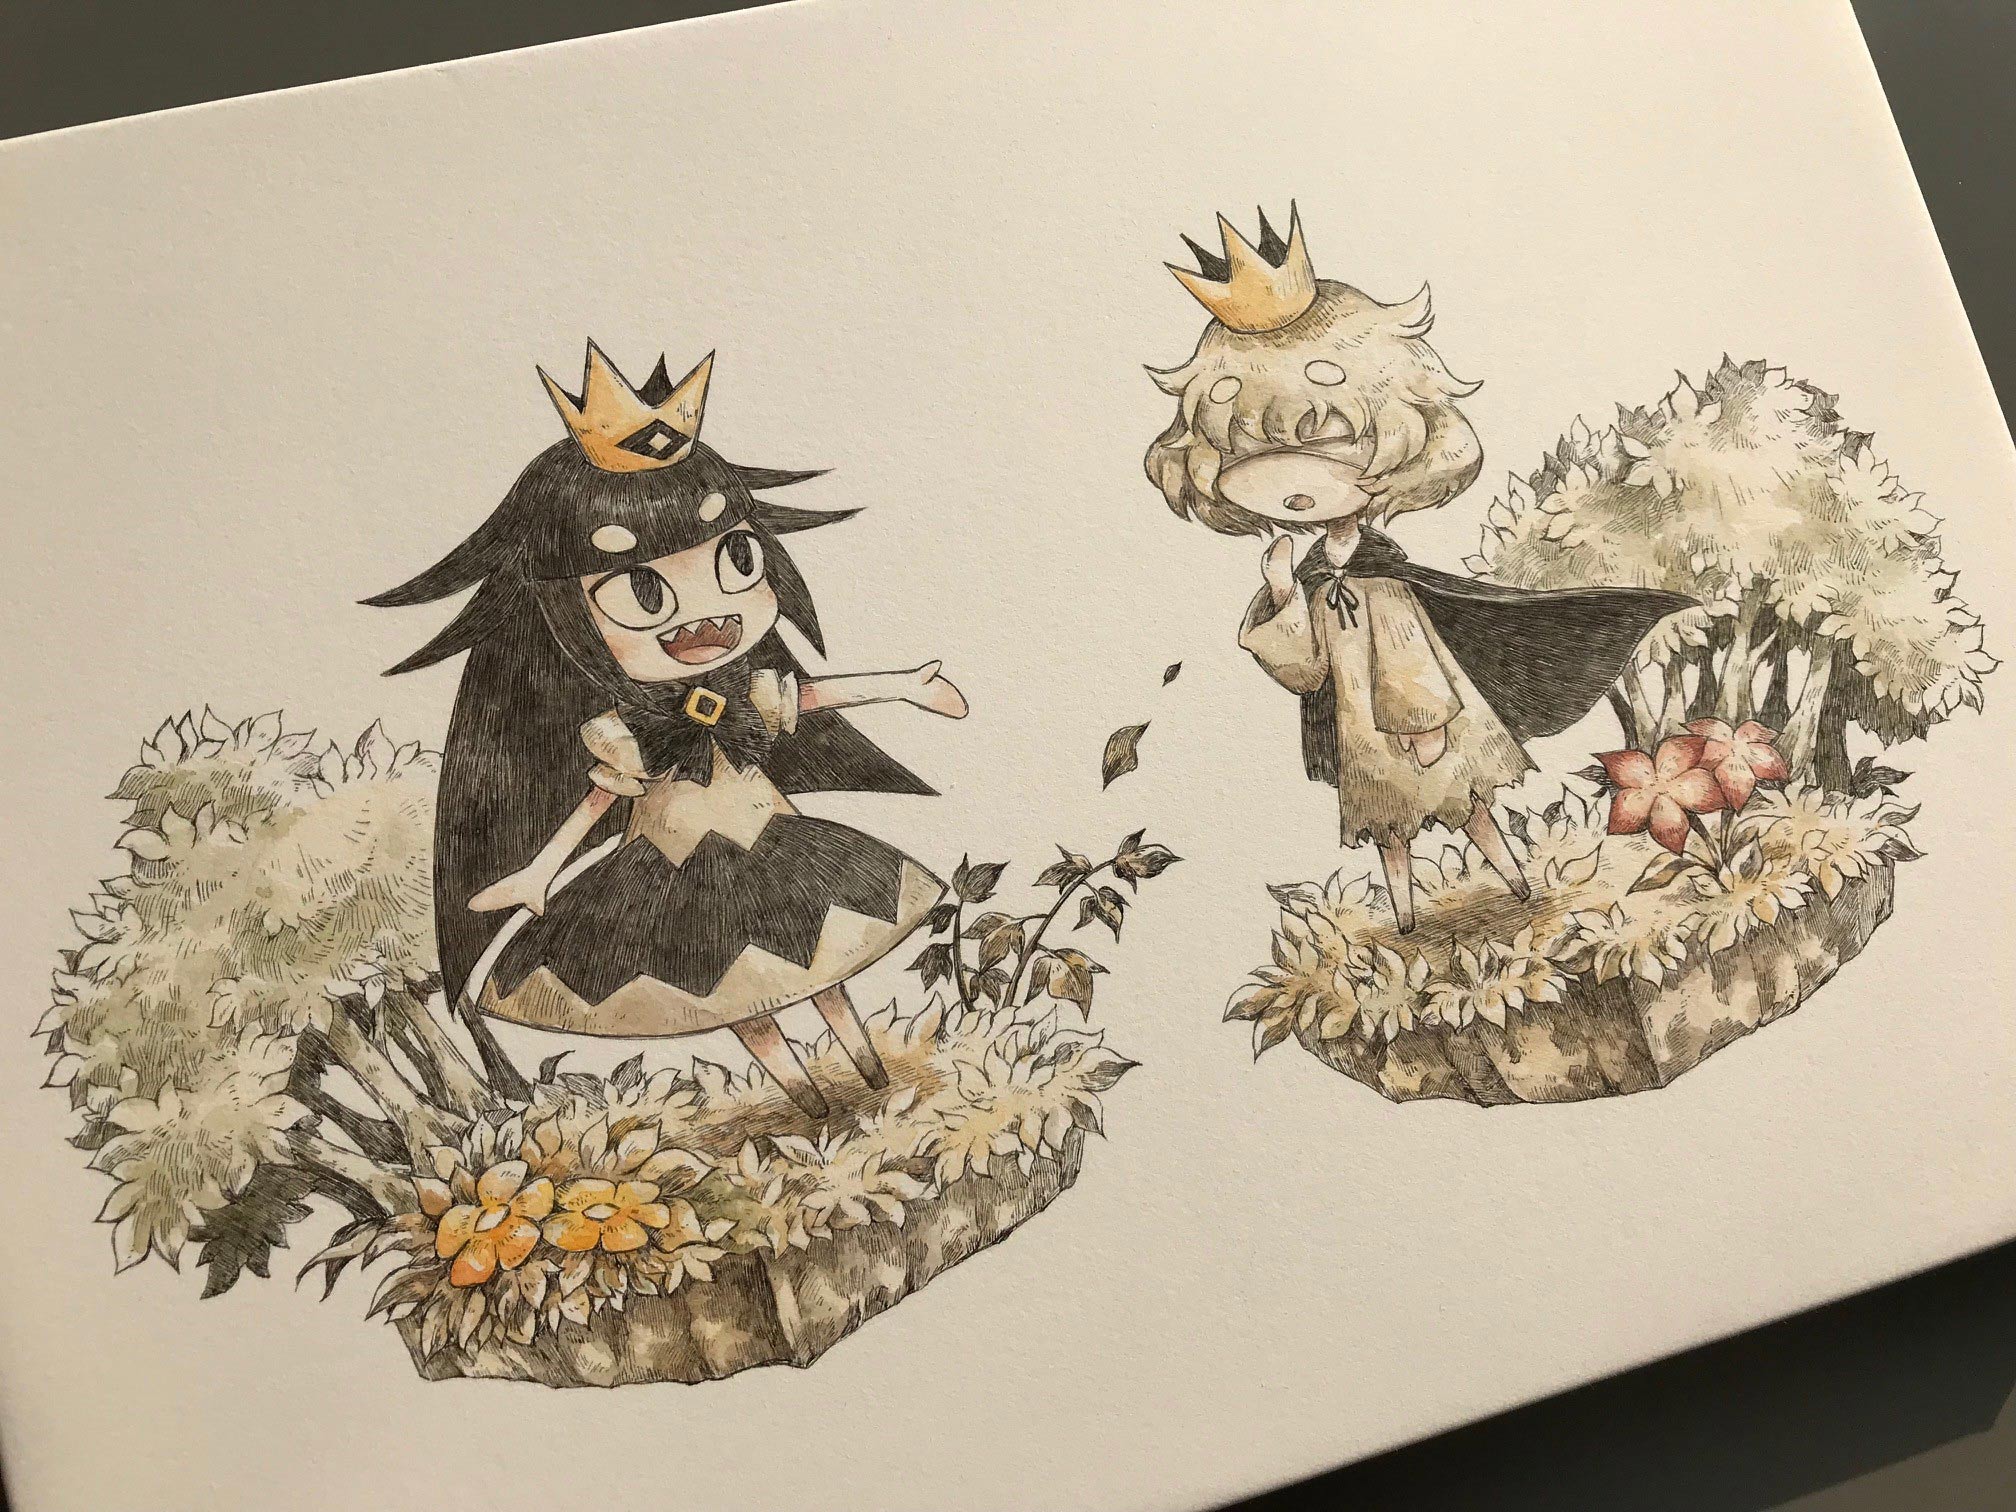 嘘つき姫と盲目王子 公式サイトのイラスト原画をツイート 日本一ソフトウェア